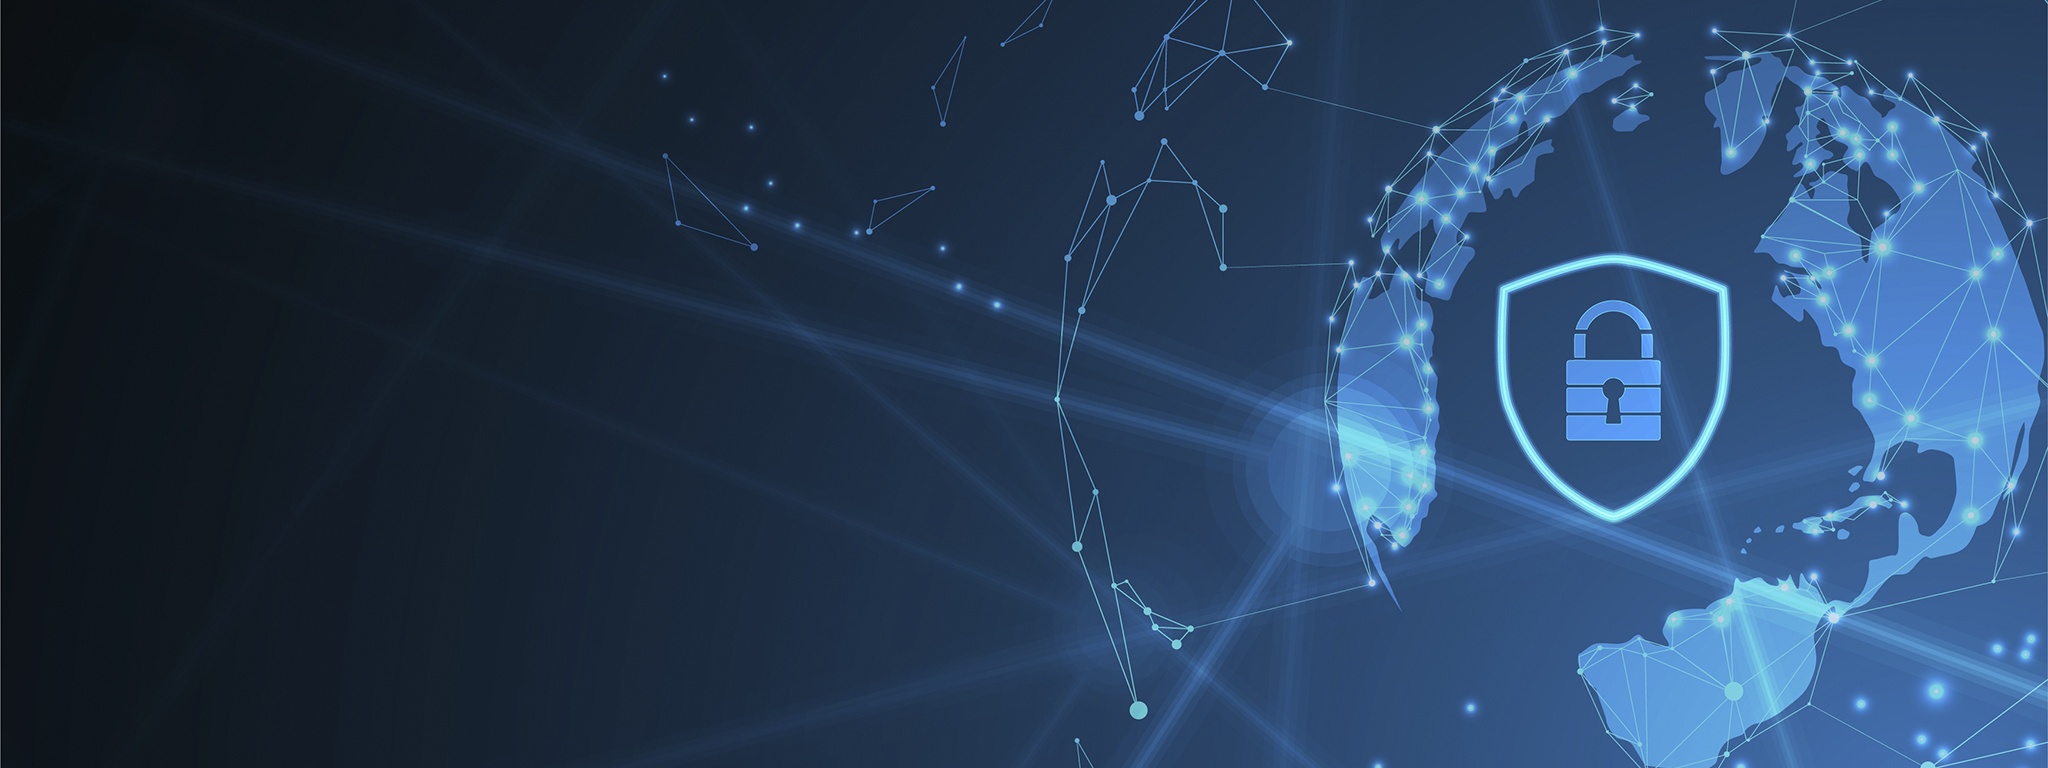 ảnh minh họa màu xanh lam về các đường kỹ thuật số internet trên quả địa cầu có ổ khóa và khiên